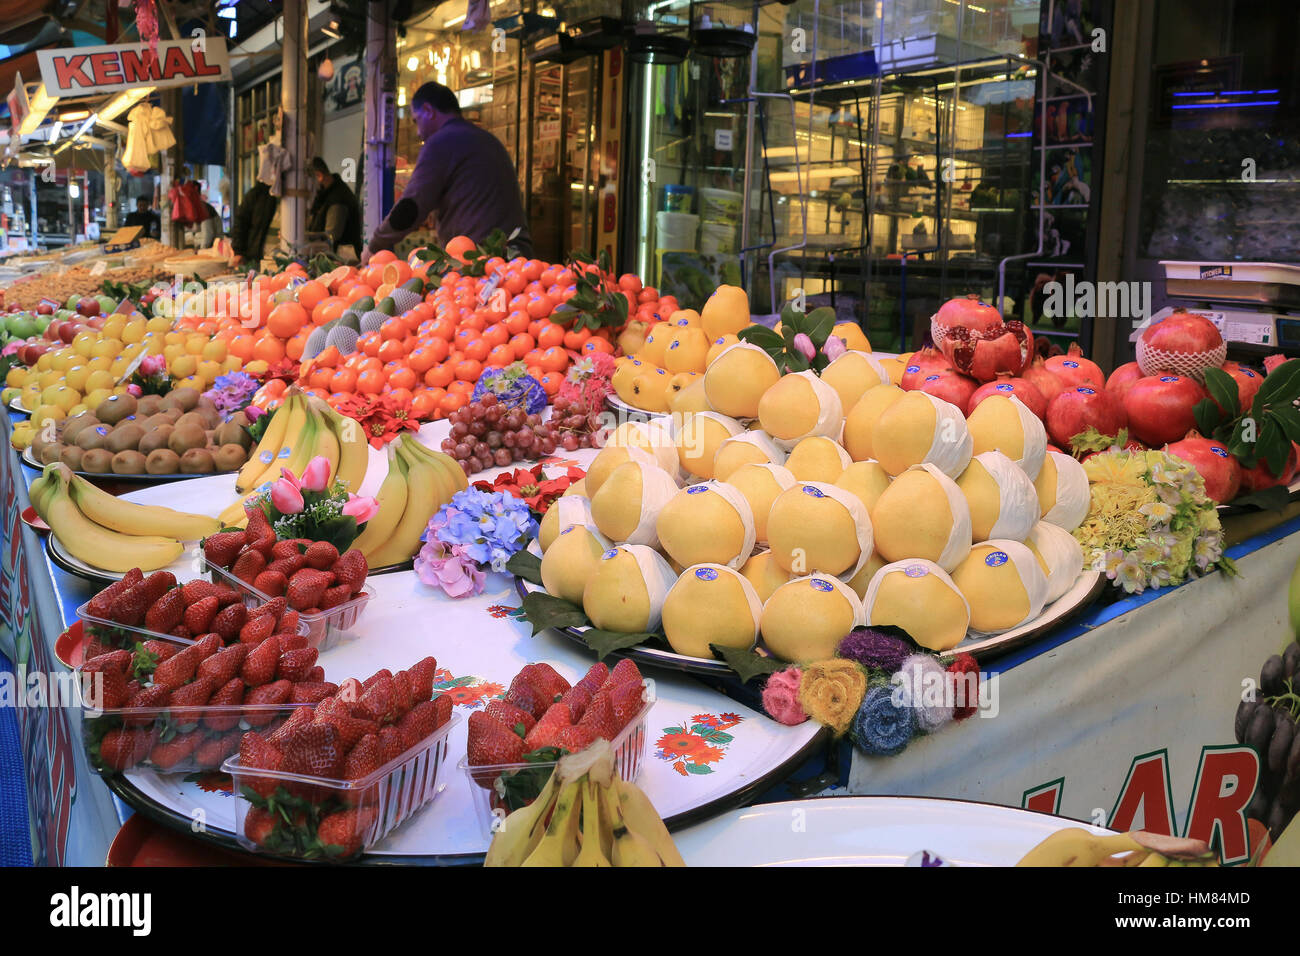 Bursa, Turquie - 23 Février 2016 : fruits frais au marché ouvert de Bursa Turquie Banque D'Images